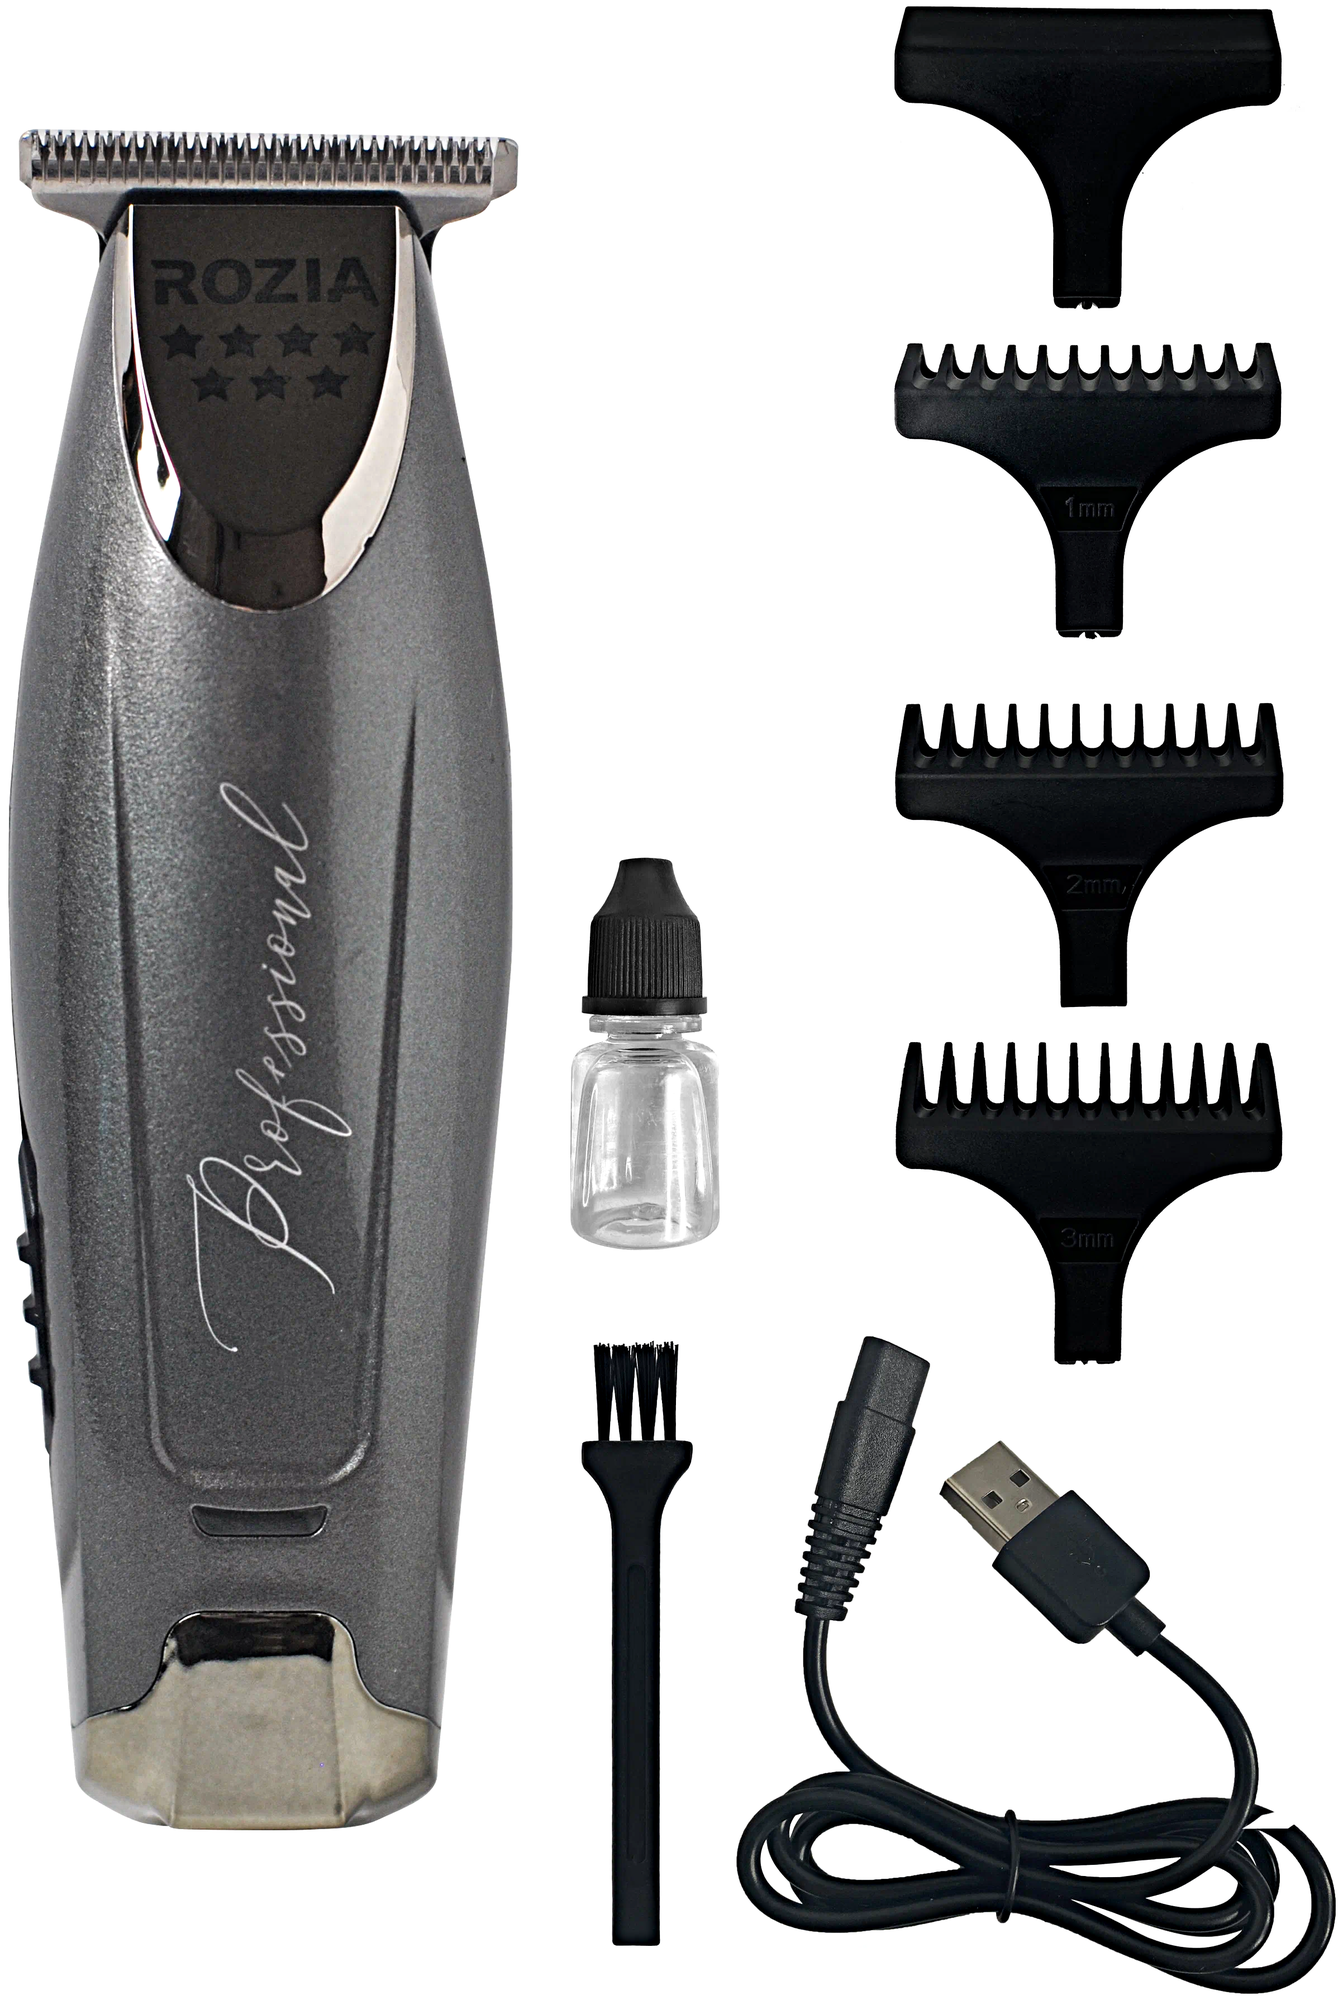 Машинка для стрижки волос HQ-263, Профессиональный триммер для стрижки волос, для бороды, усов, Cеребристый